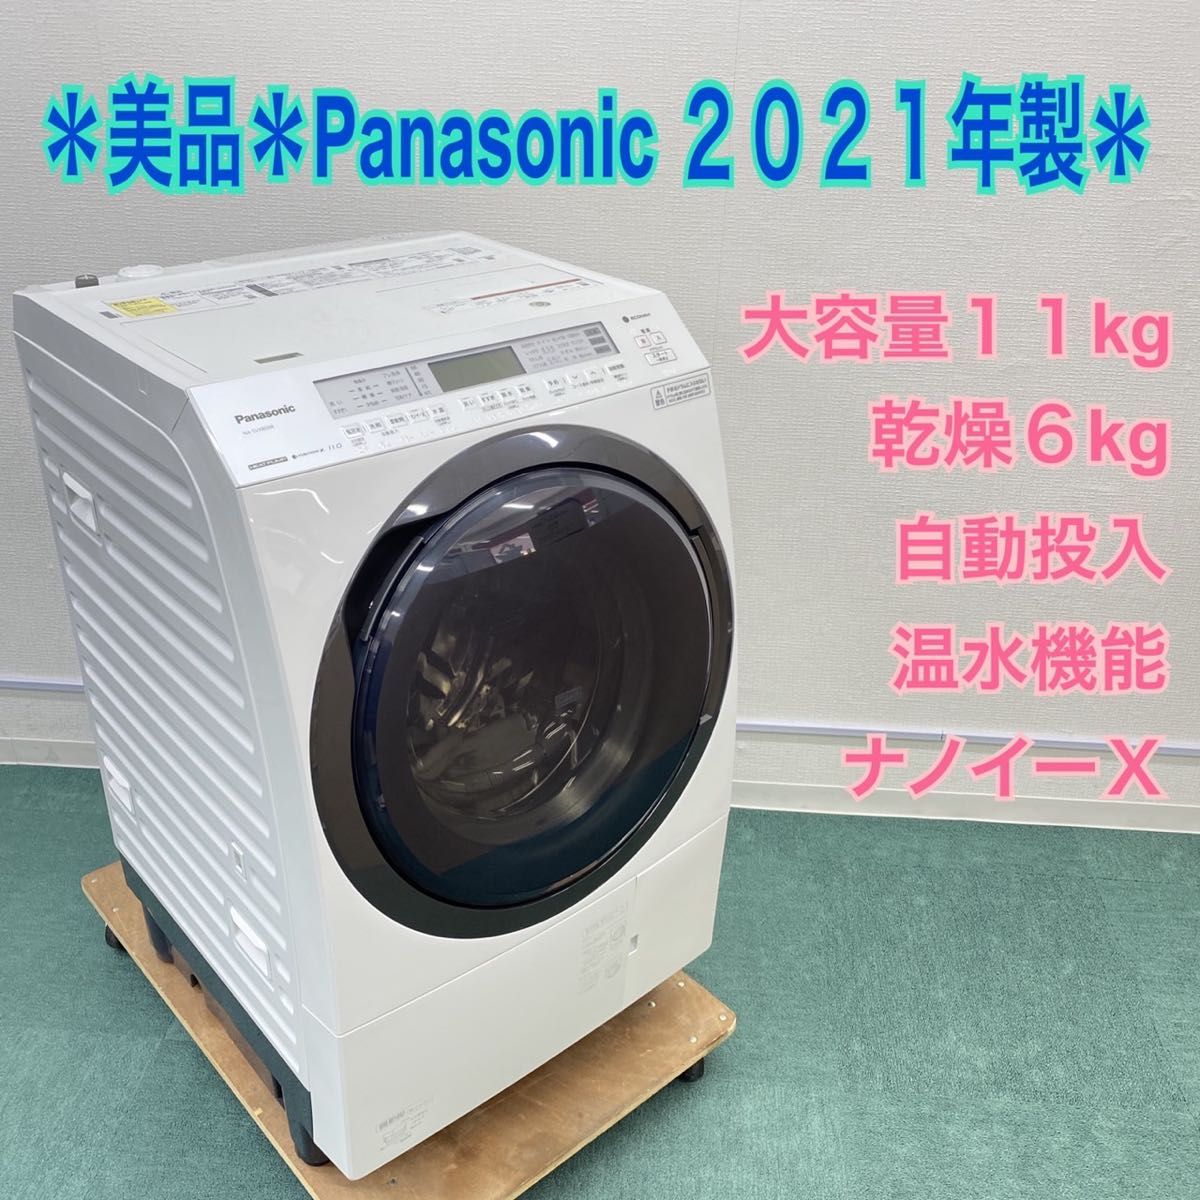 送料込み 極上品モデル Panasonic 2021年製 大容量11kg ドラム式洗濯